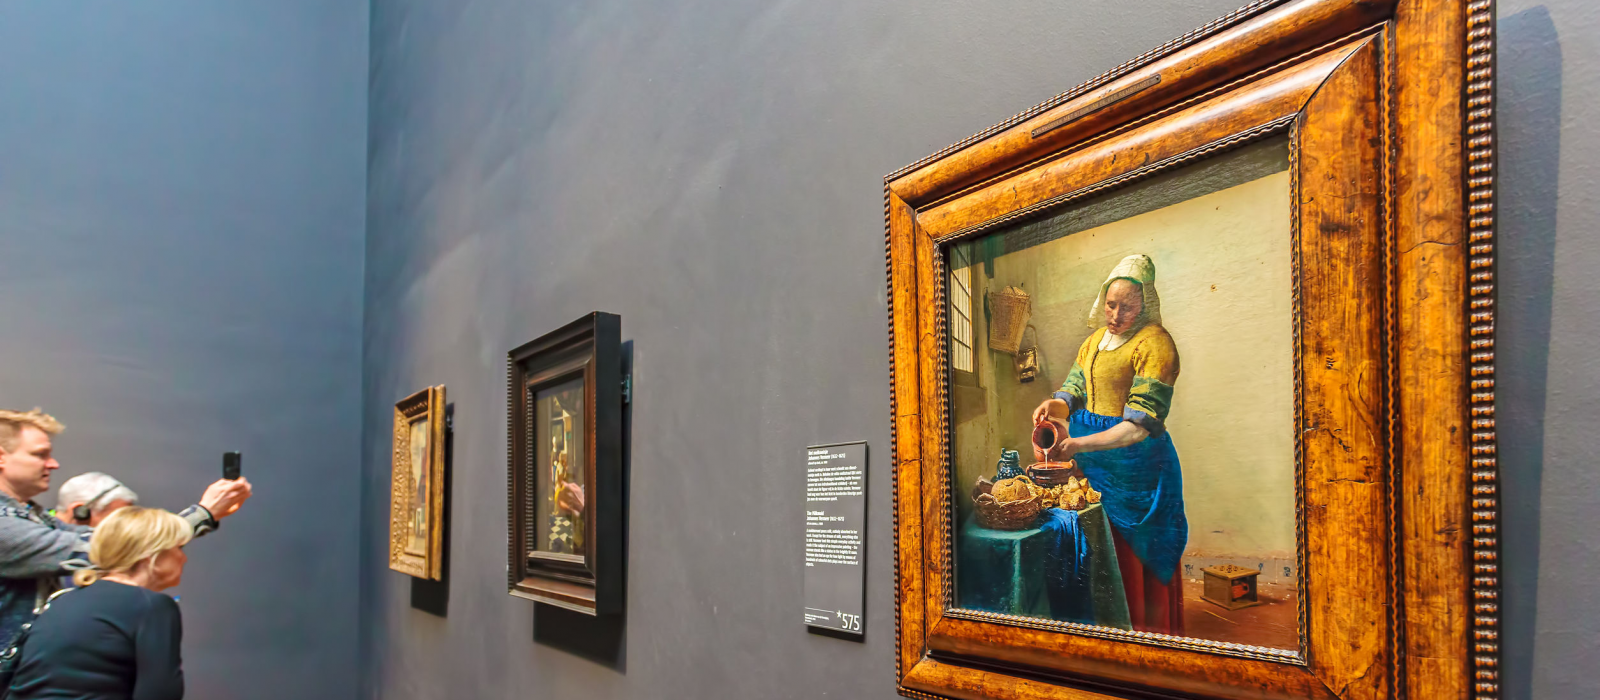 Derniers jours pour profiter de l’expo Vermeer au Louvre !